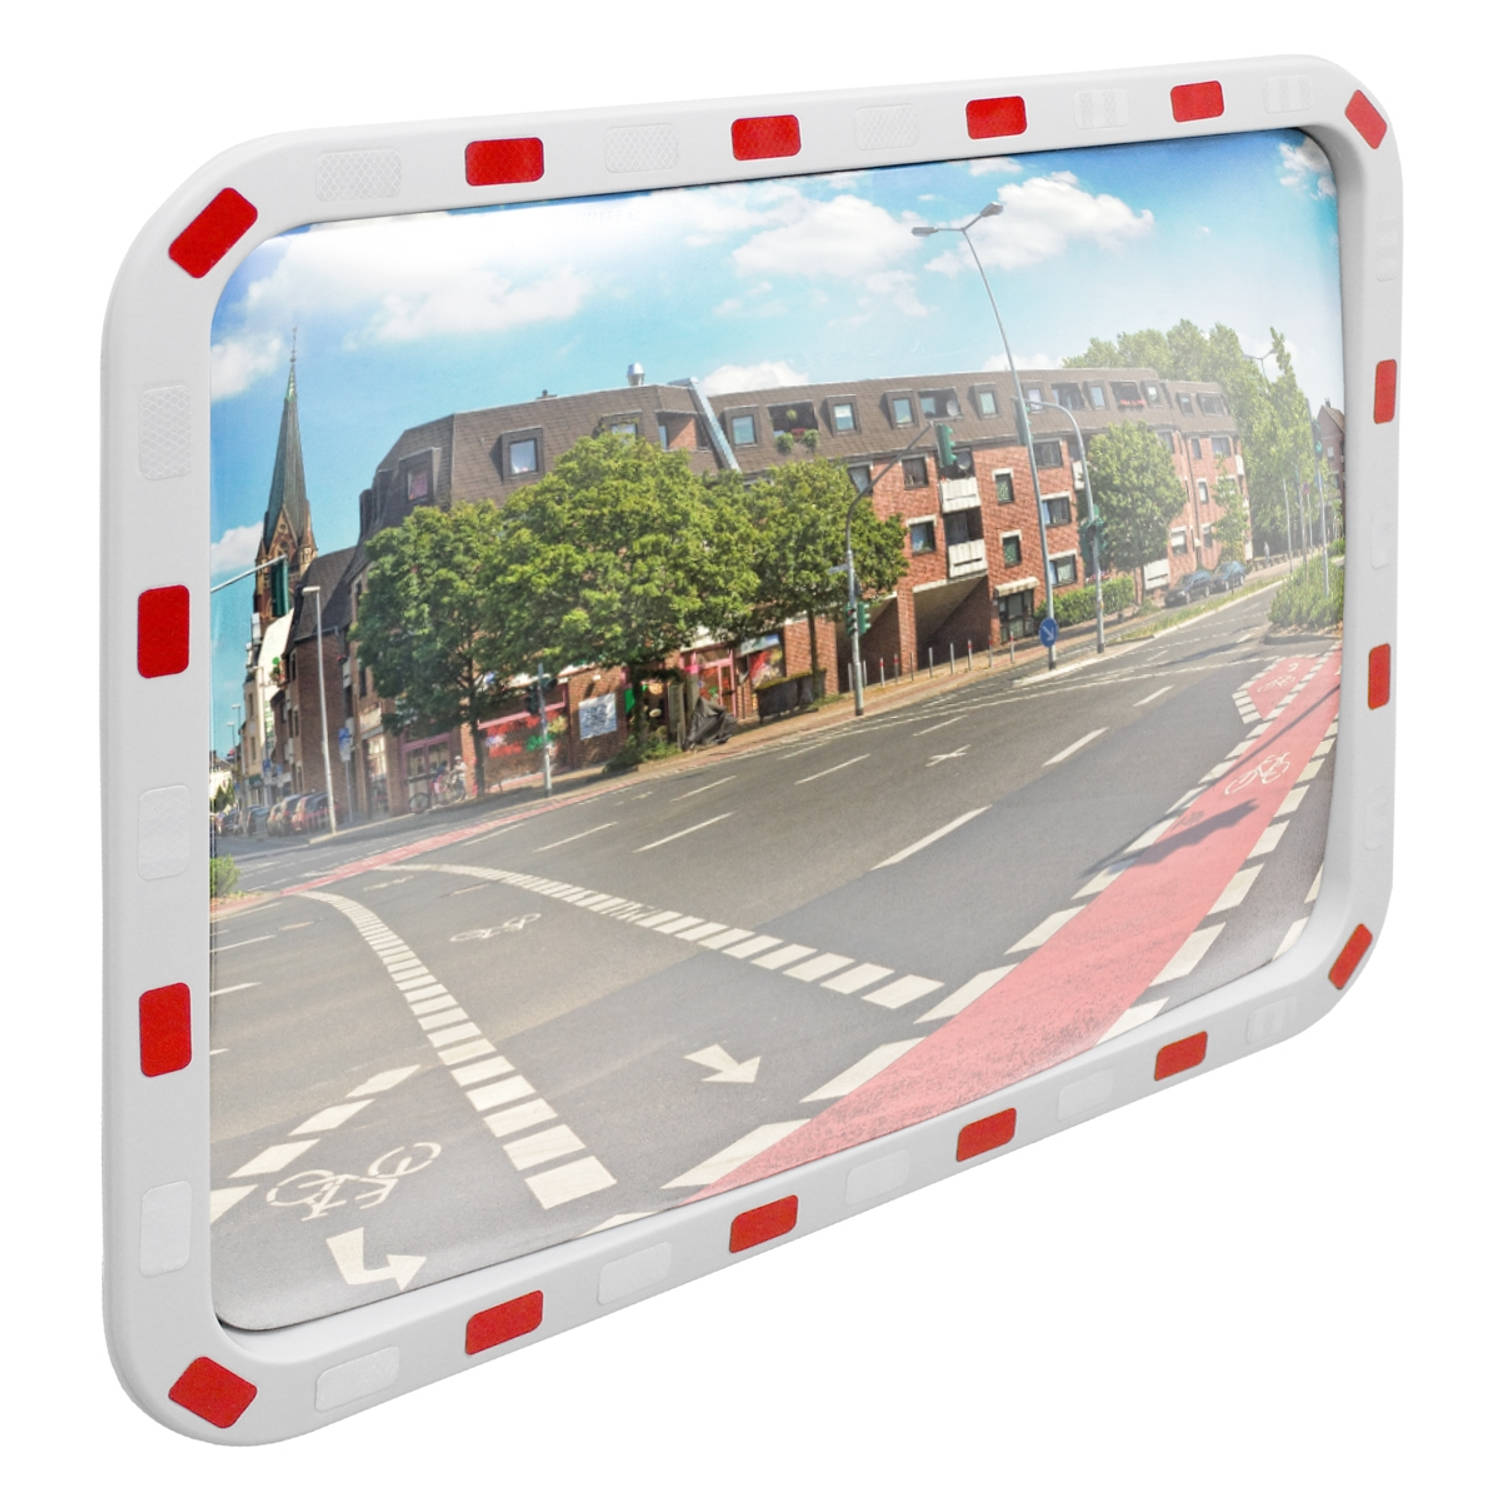 Rechthoekige verkeersspiegel, 60 x 80 cm, met reflectoren incl. houder, van kunststof